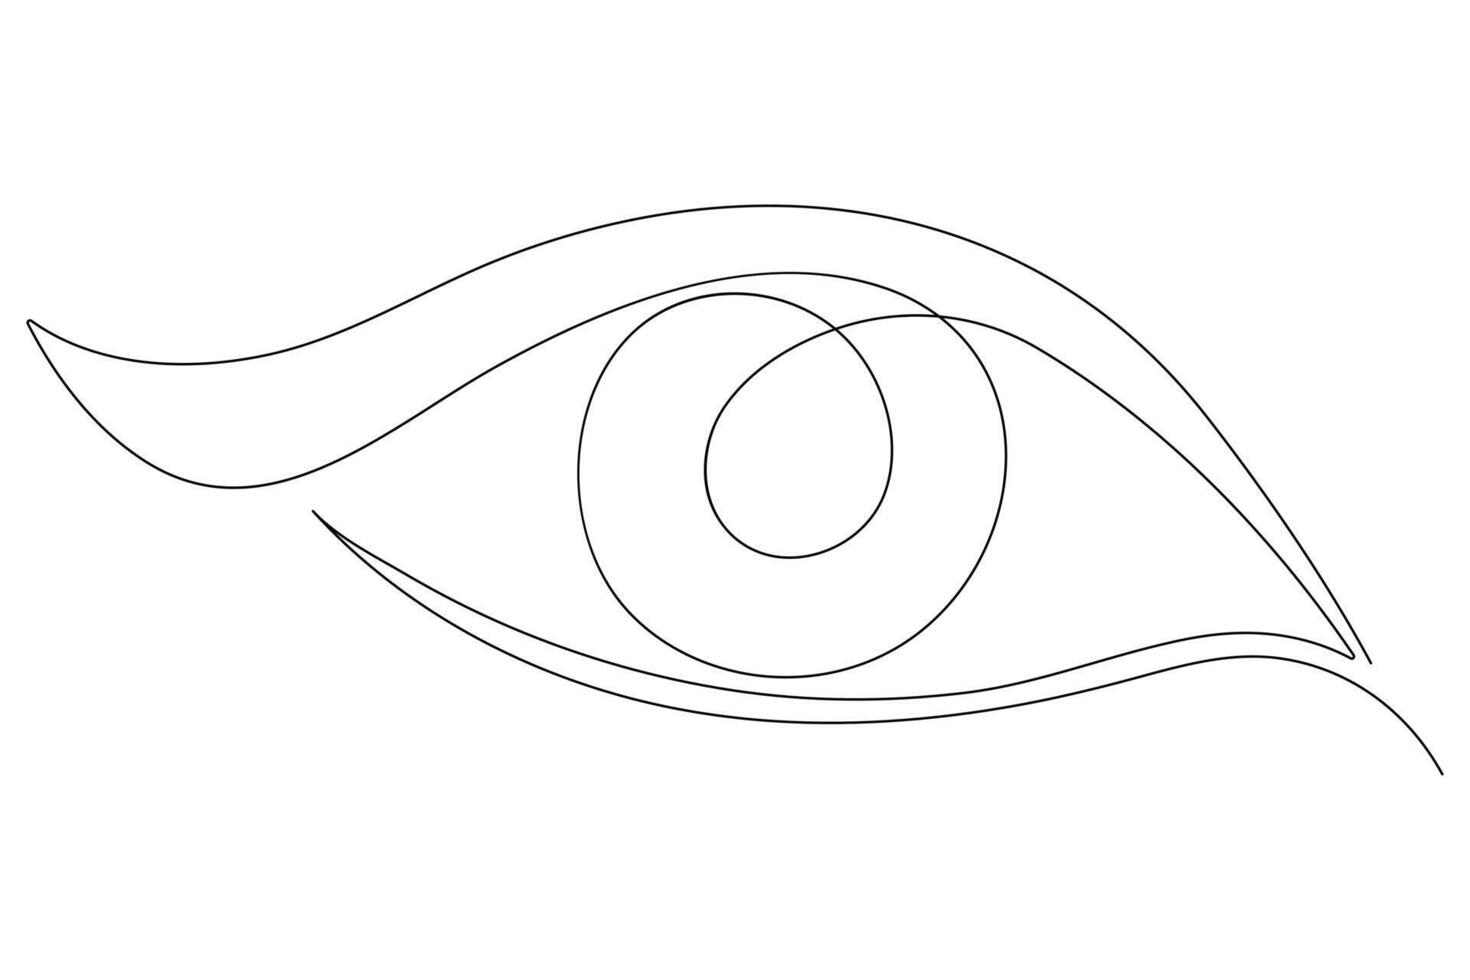 öga symbol i kontinuerlig ett linje konst teckning av mänsklig öga tecken översikt vektor illustration